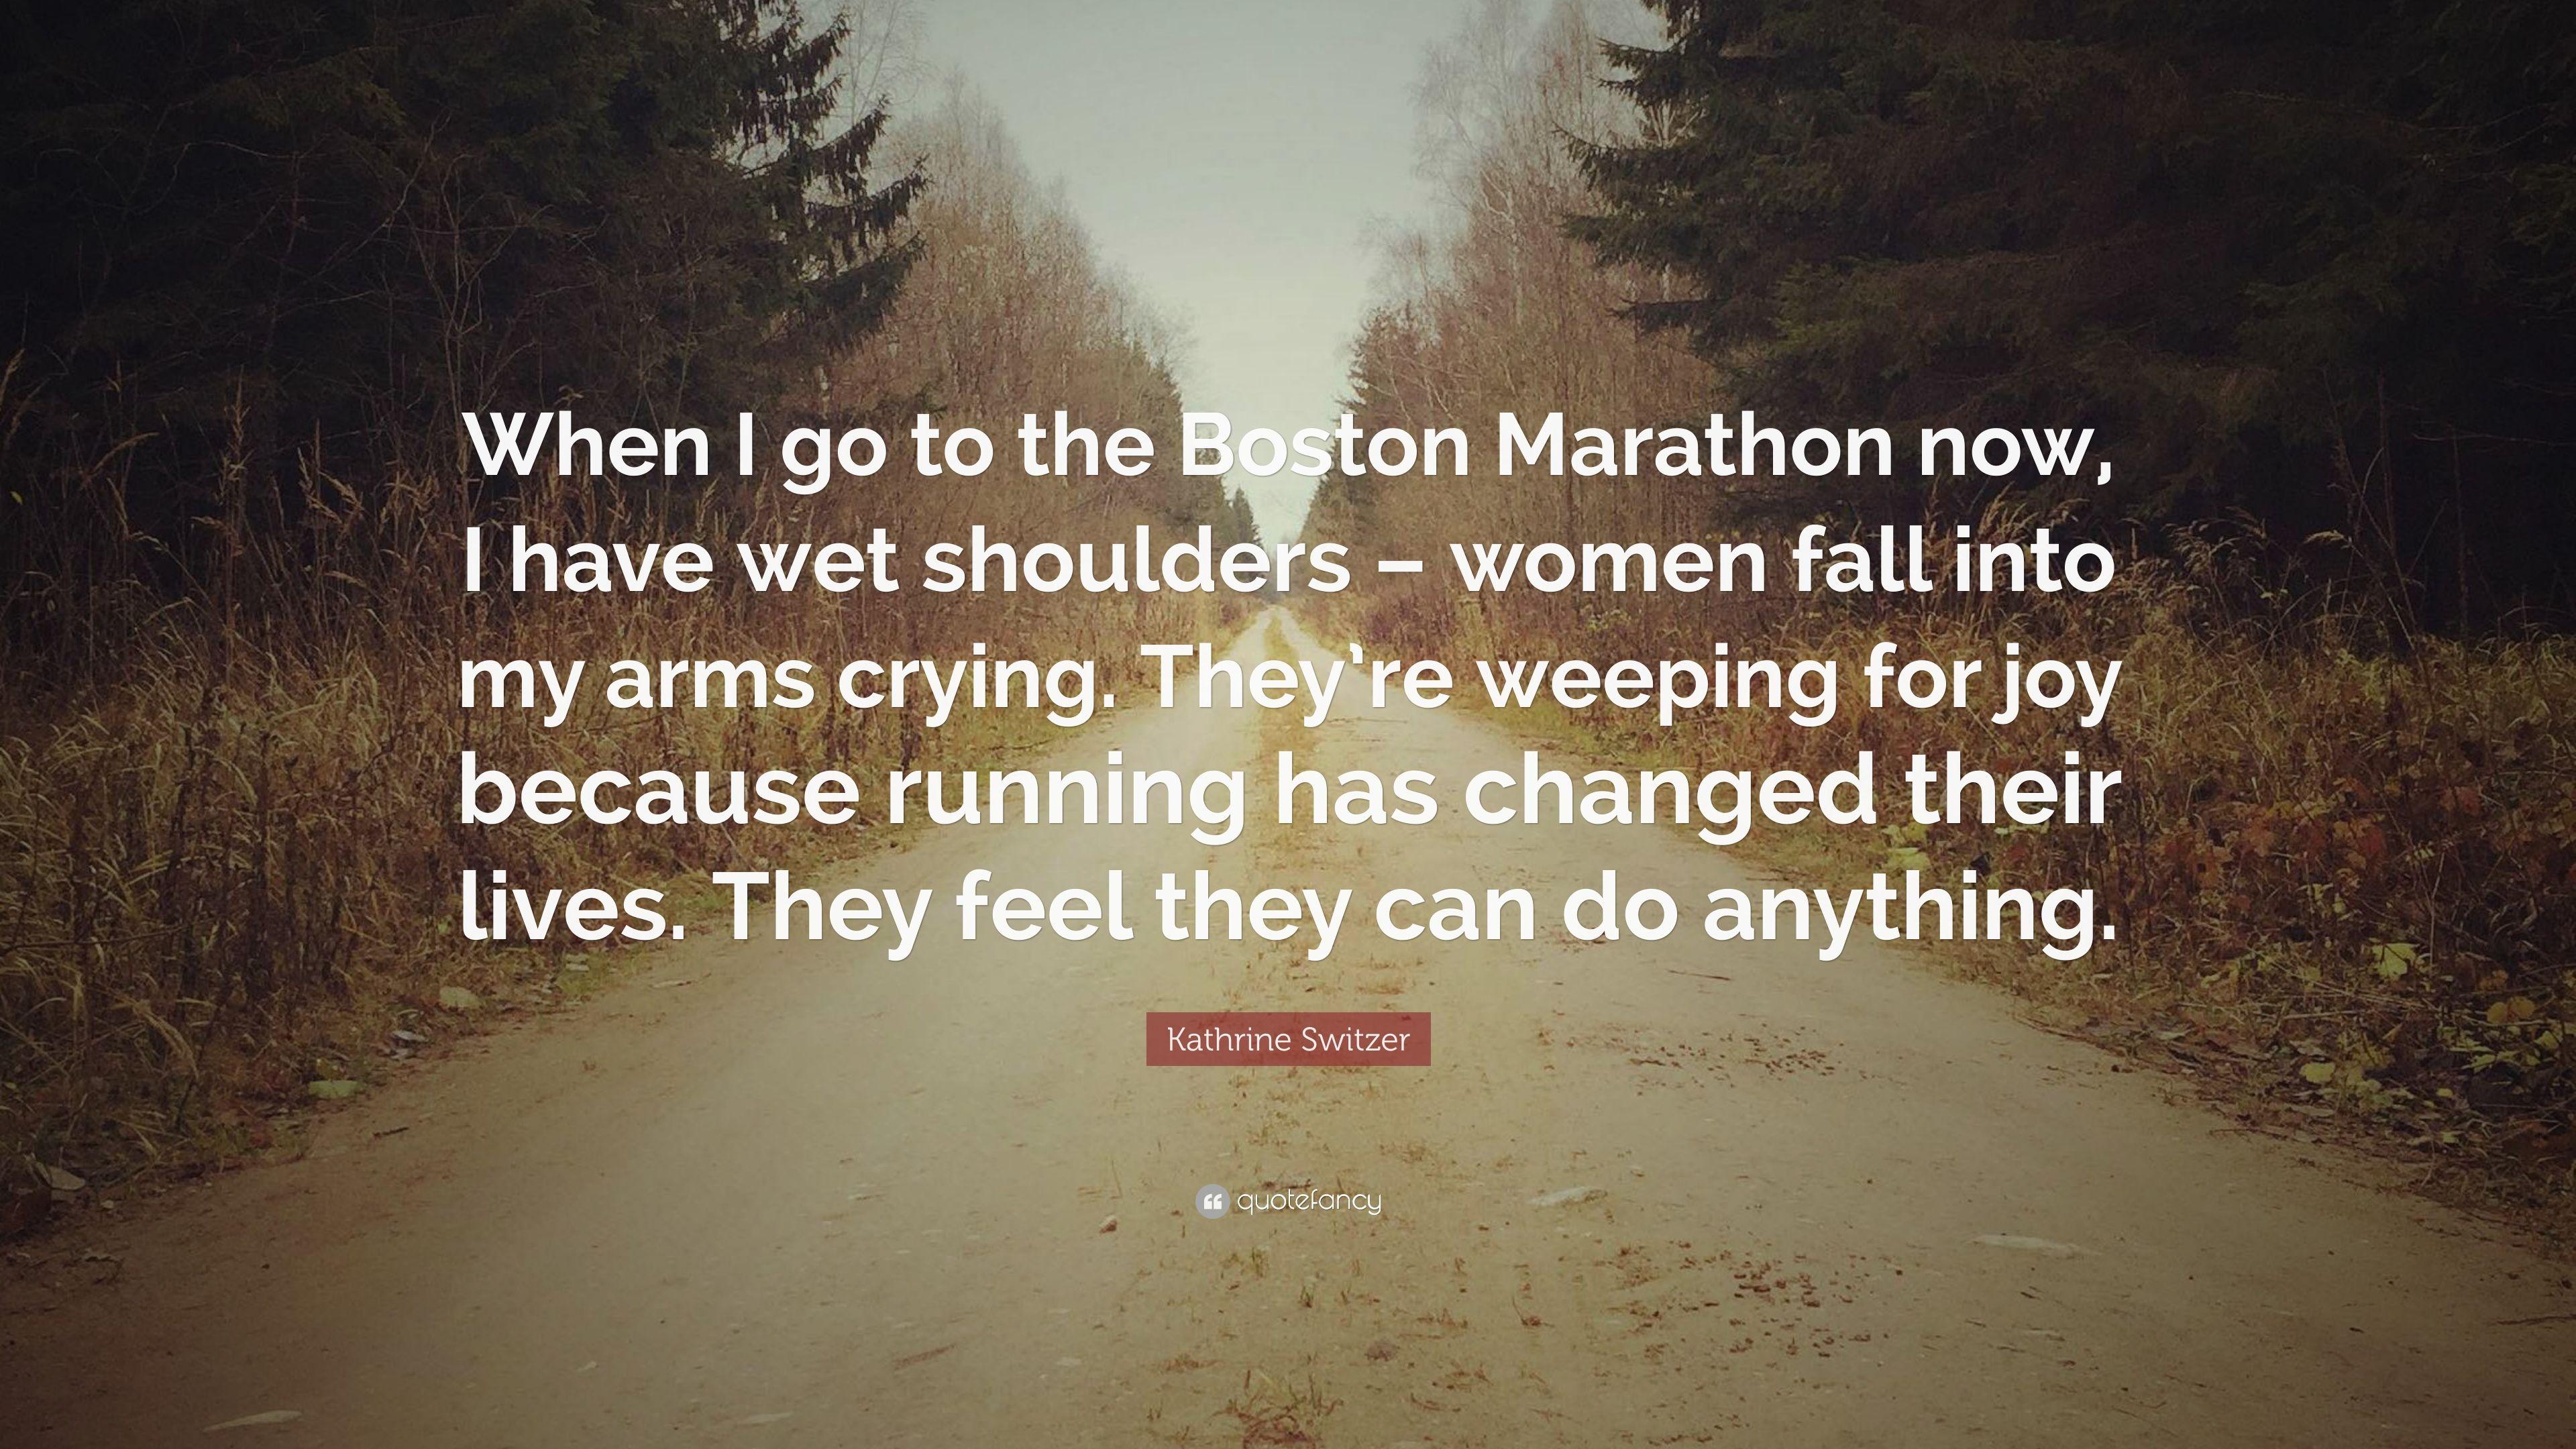 Kathrine Switzer Quote: “When I go to the Boston Marathon now, I